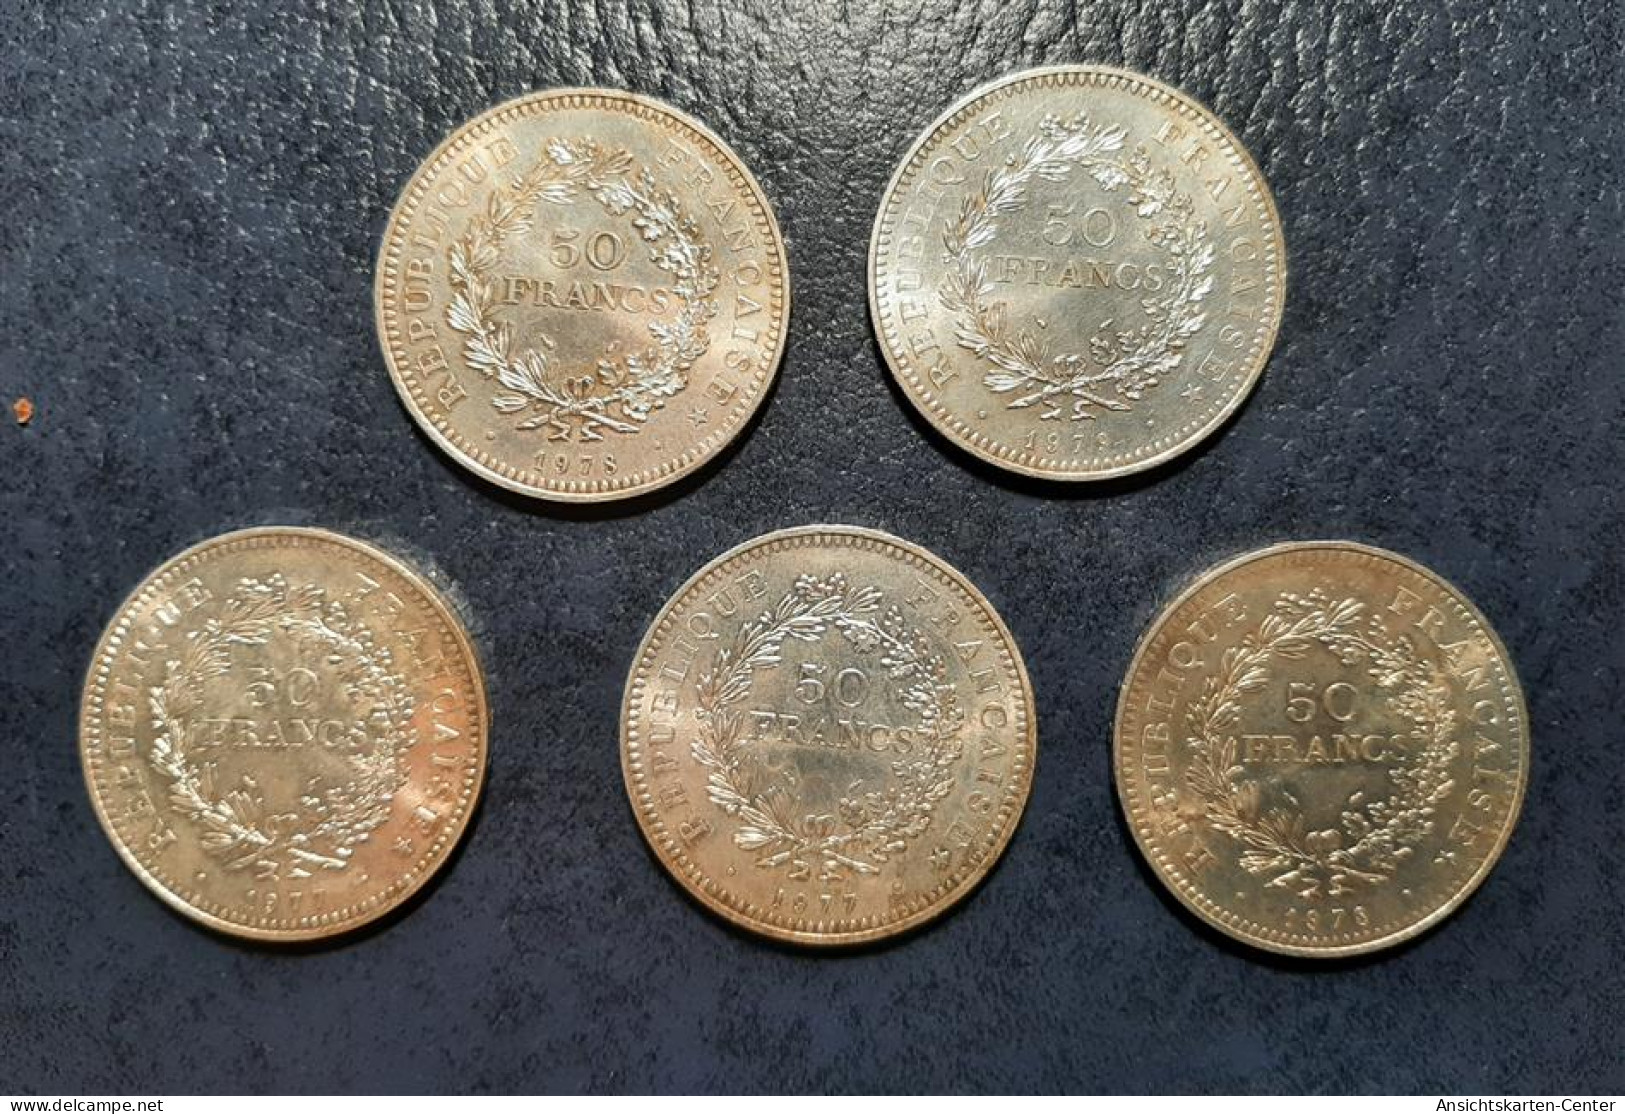 13707511 - Frankreich 5 X 50 Fr. Div. Jahrgaenge Feinheit 900/1000 Silber Feingewicht Gesamt 135 G - Münzen (Abb.)